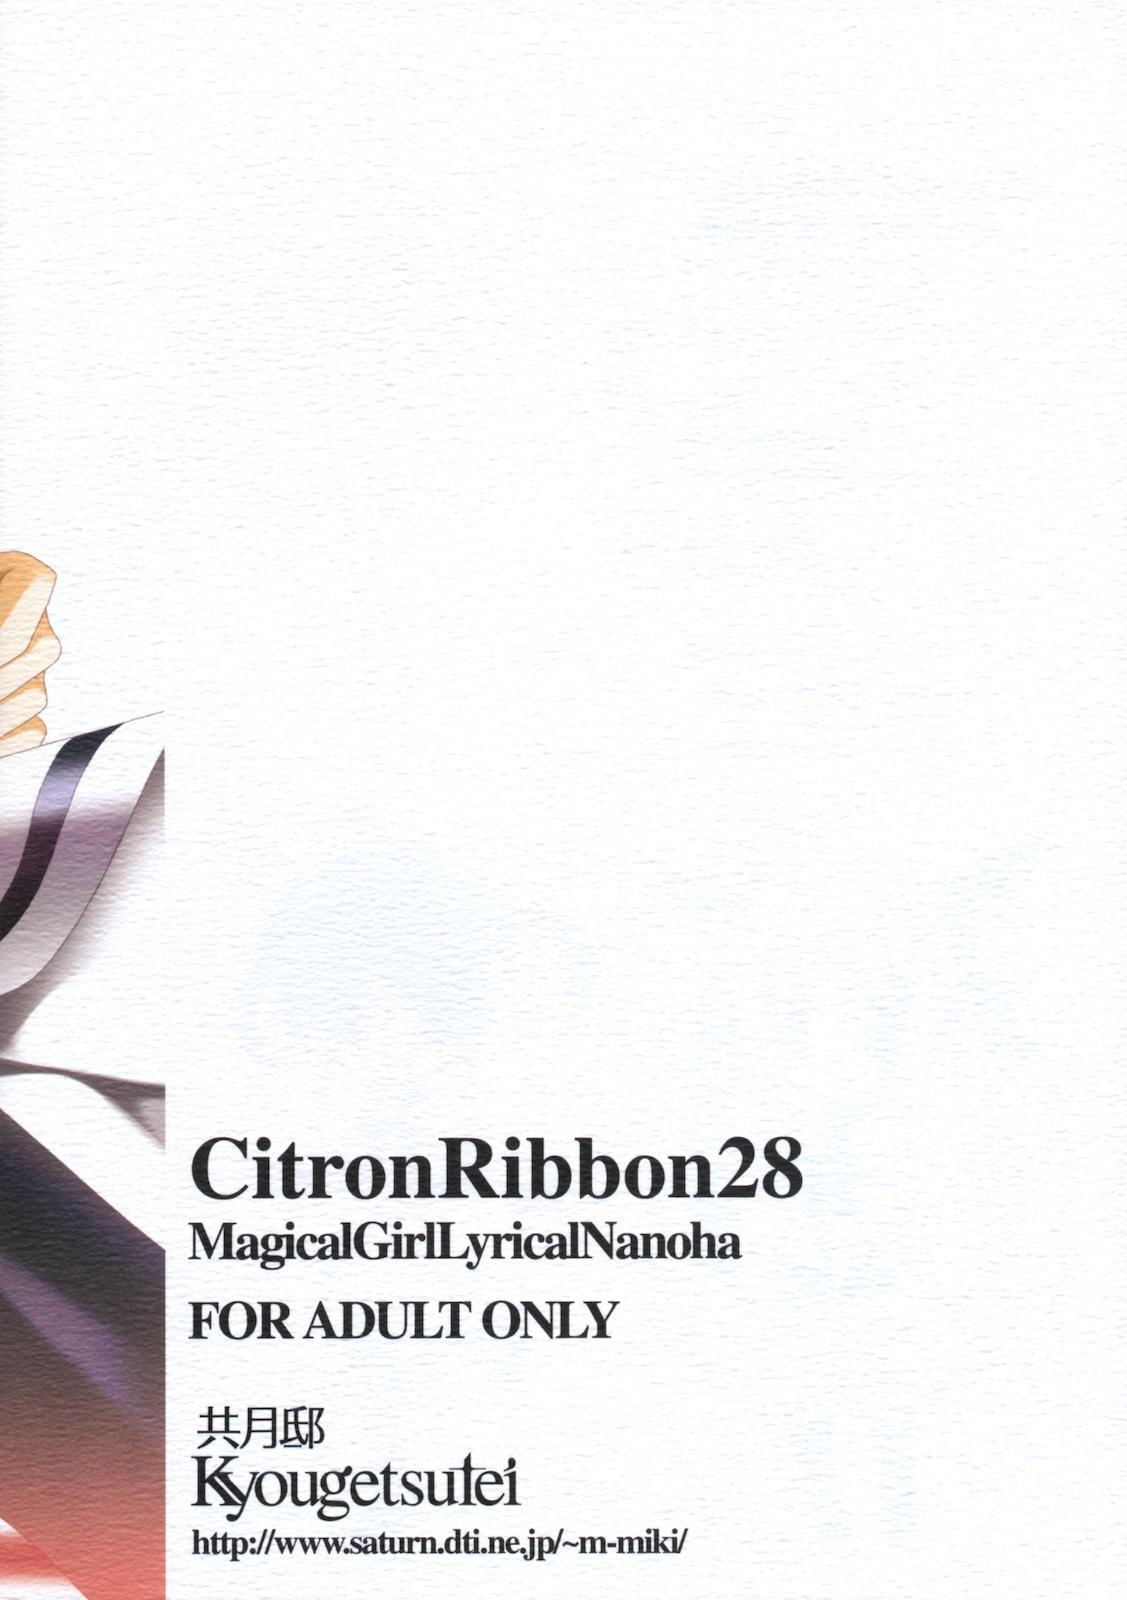 Citron Ribbon 28 25